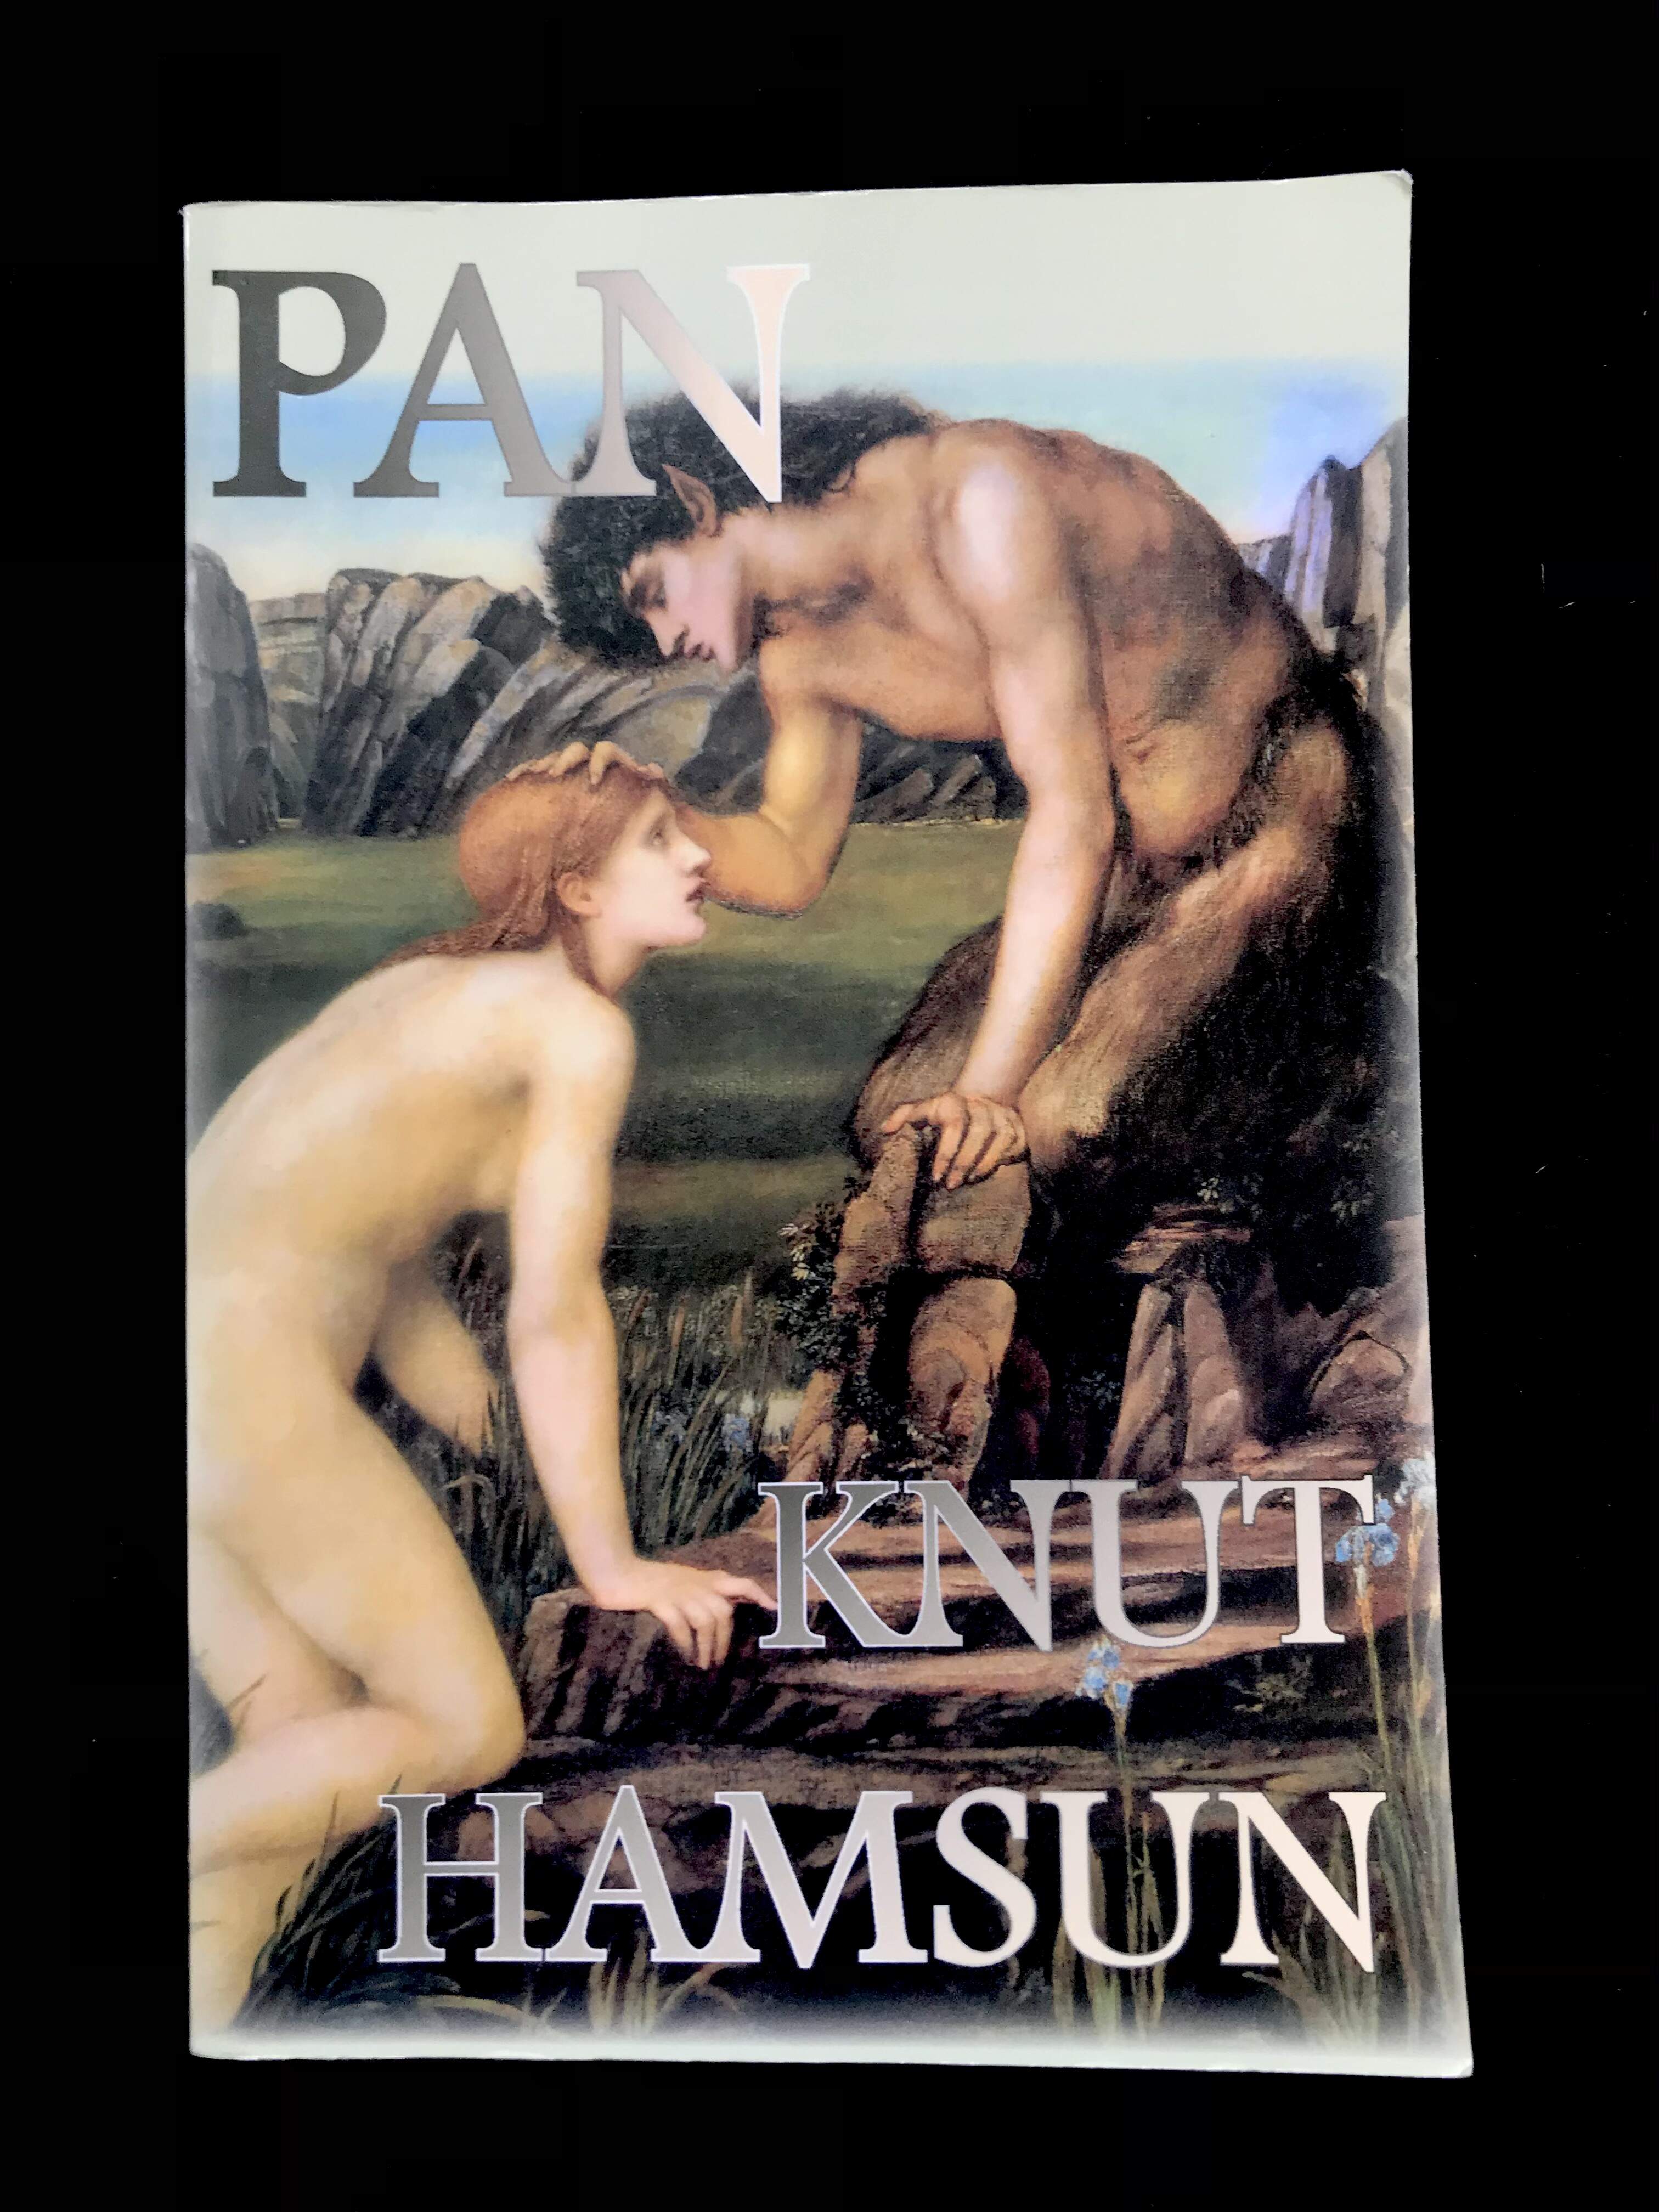 Pan by Knut Hamsun